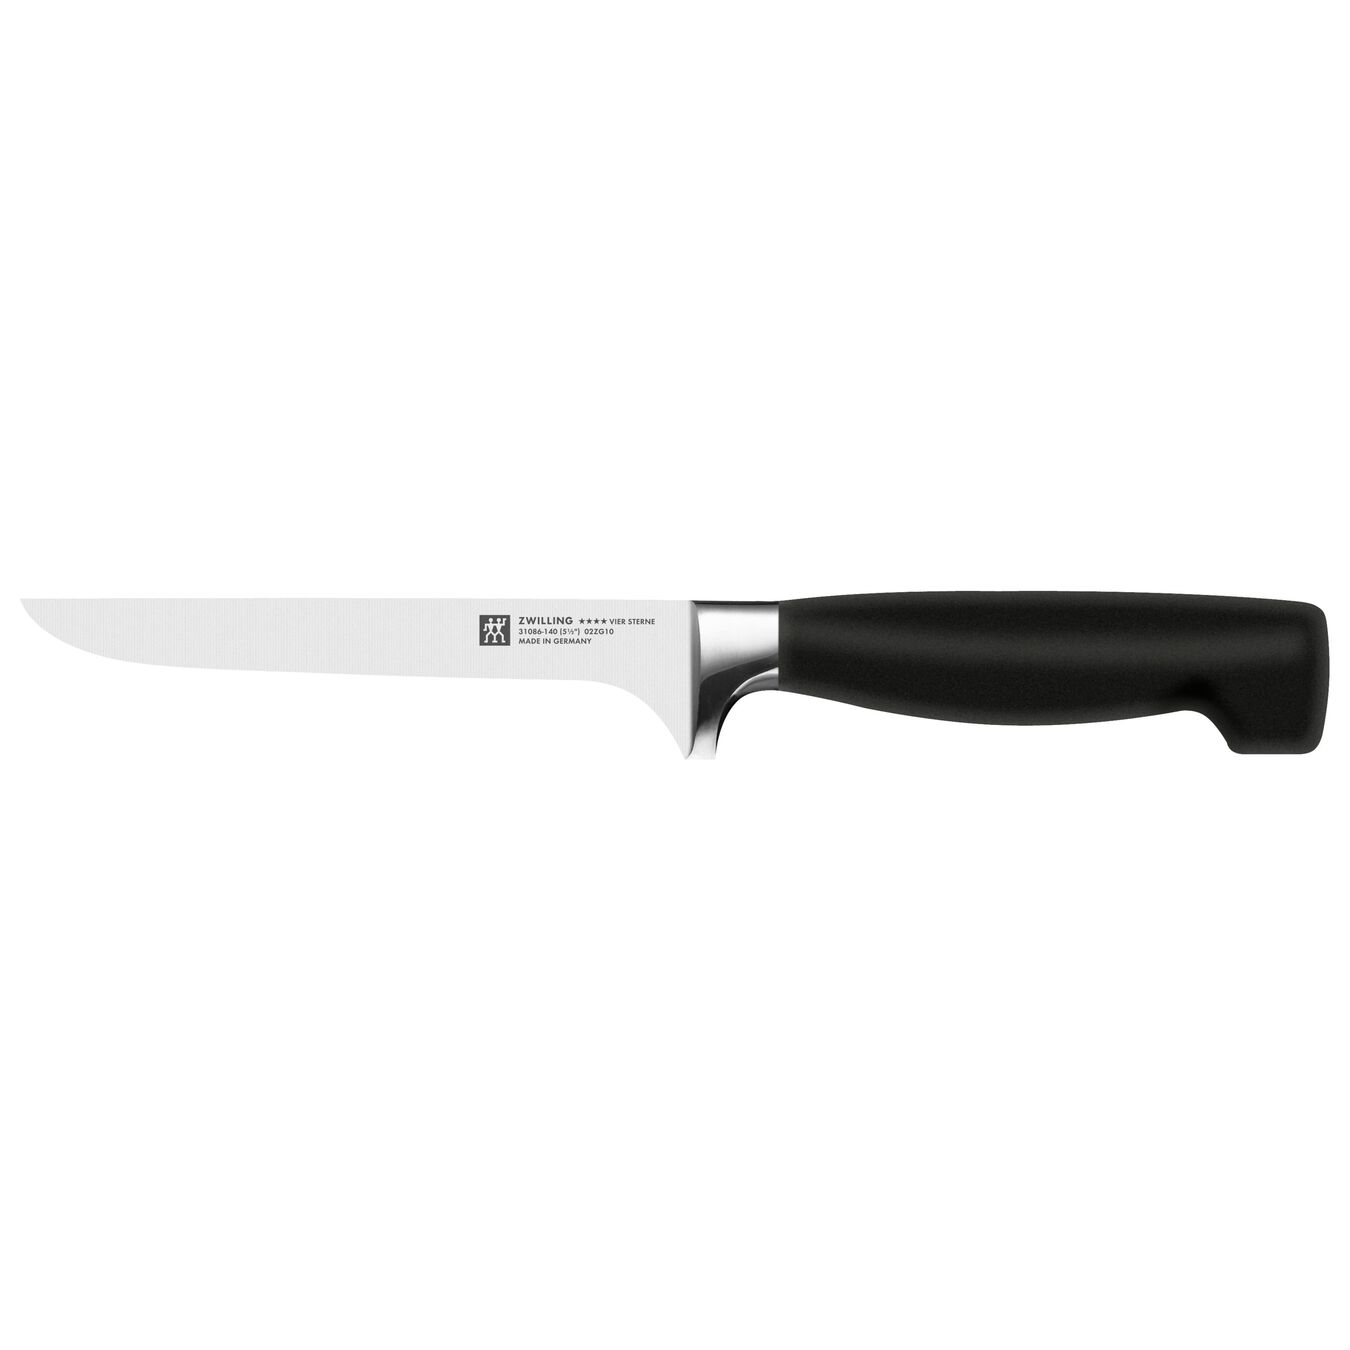 14 cm Boning knife,,large 1